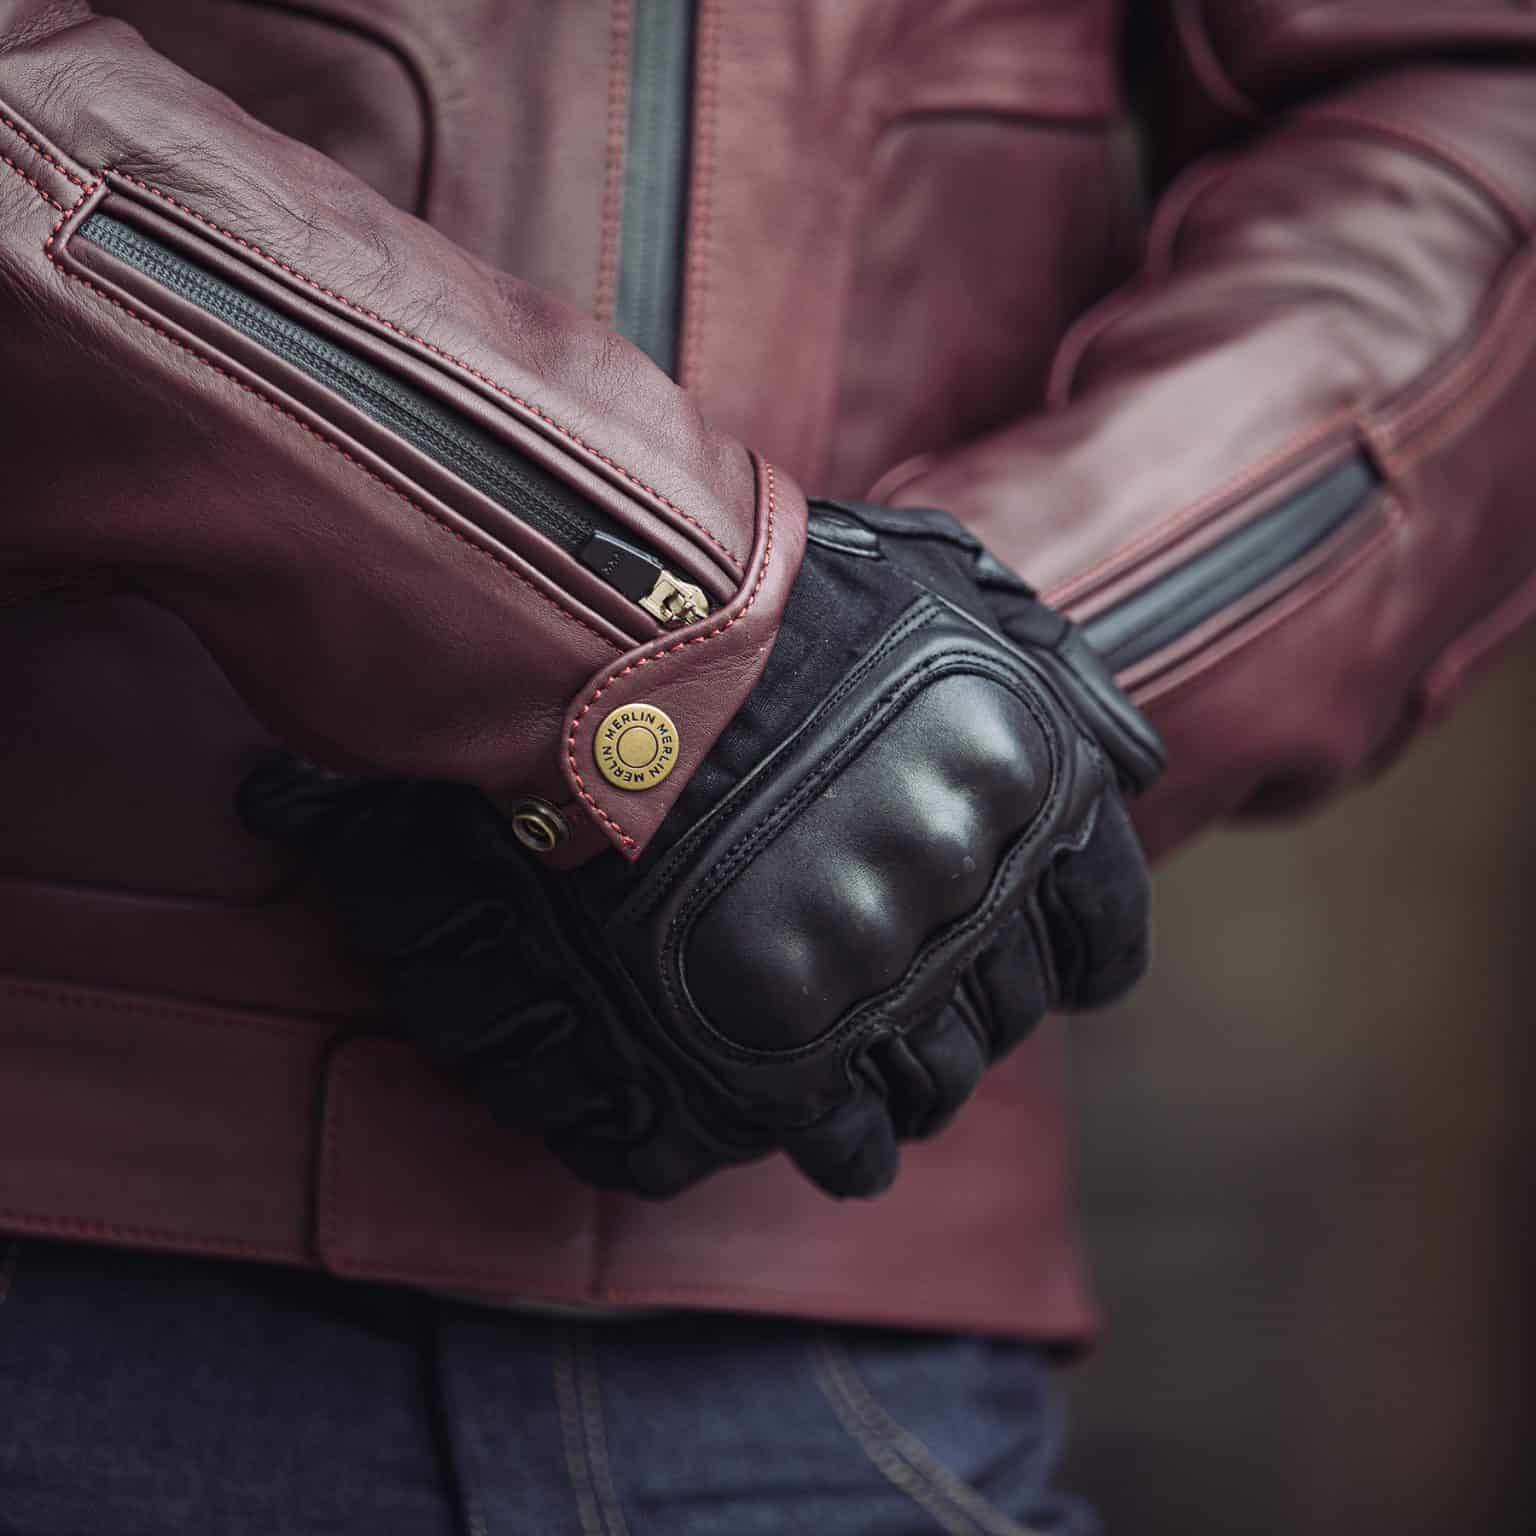 Merlin Bike Gear - Merlin Gable waterproof leather motorcycle jacket